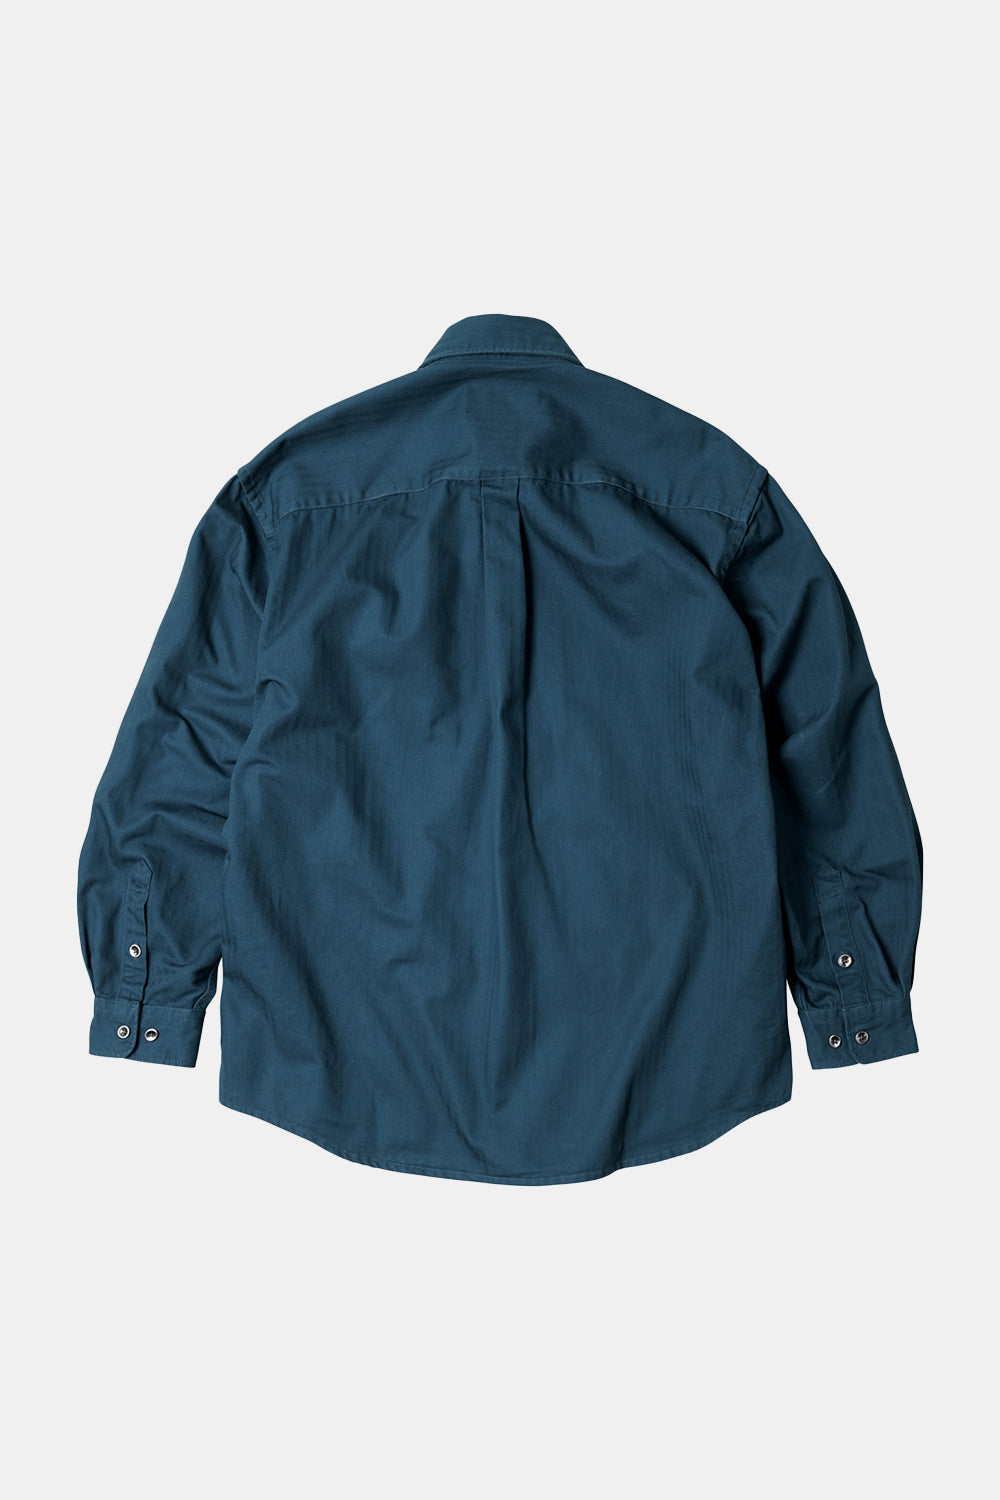 Frizmworks HBT Carpenter Pocket Work Shirt Jacket (vintage blå)